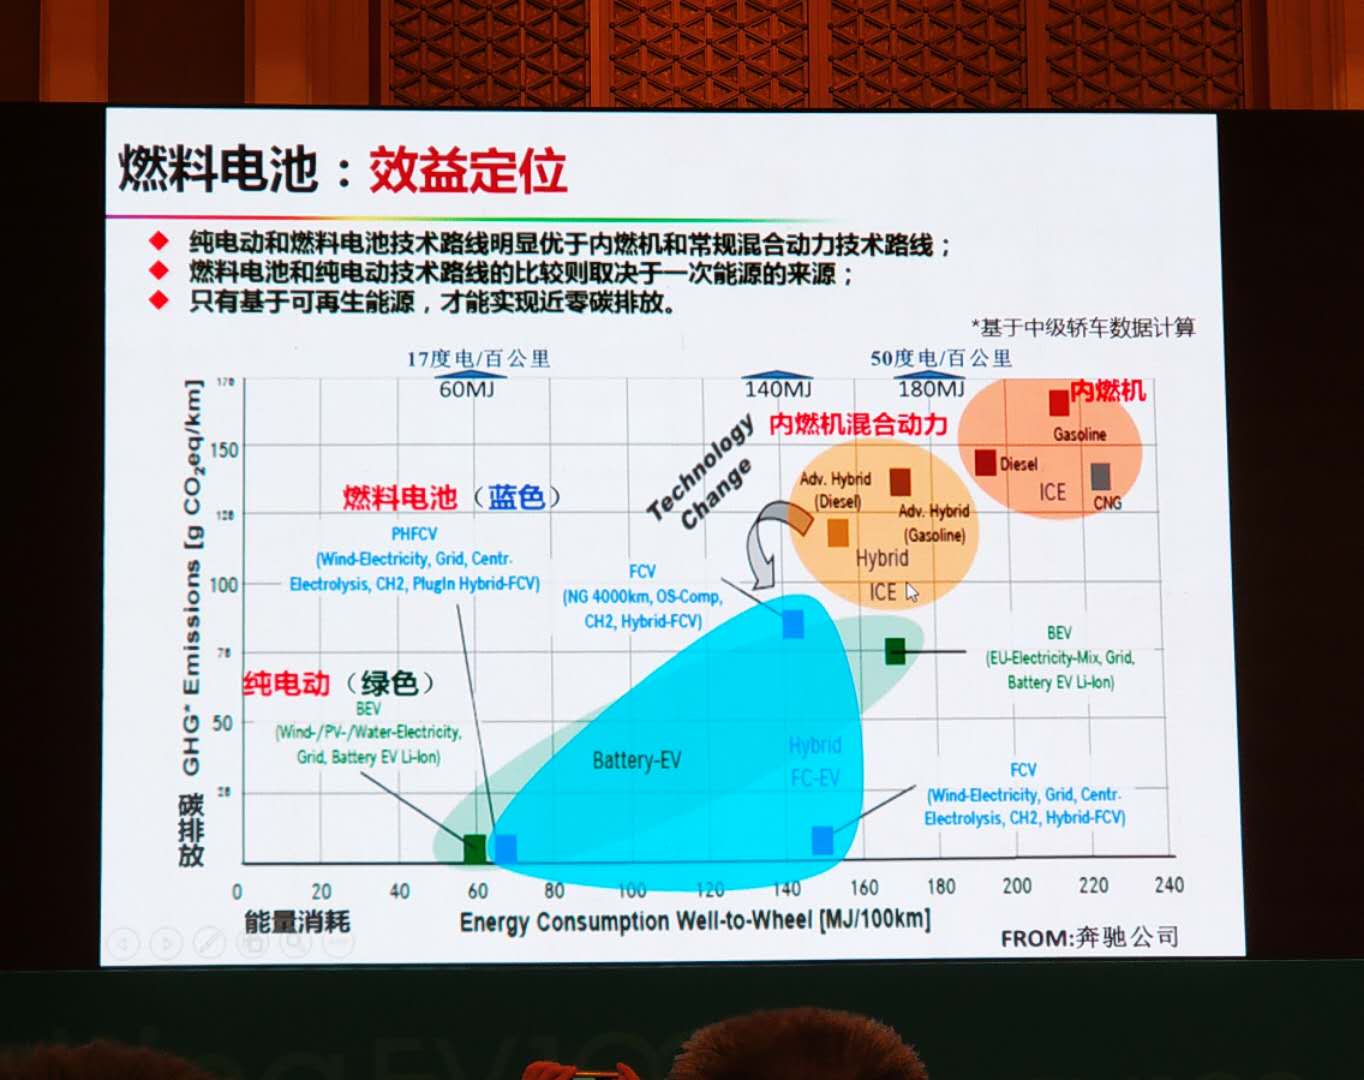 欧阳明高：2025年中国新能源汽车技术路线终将成熟